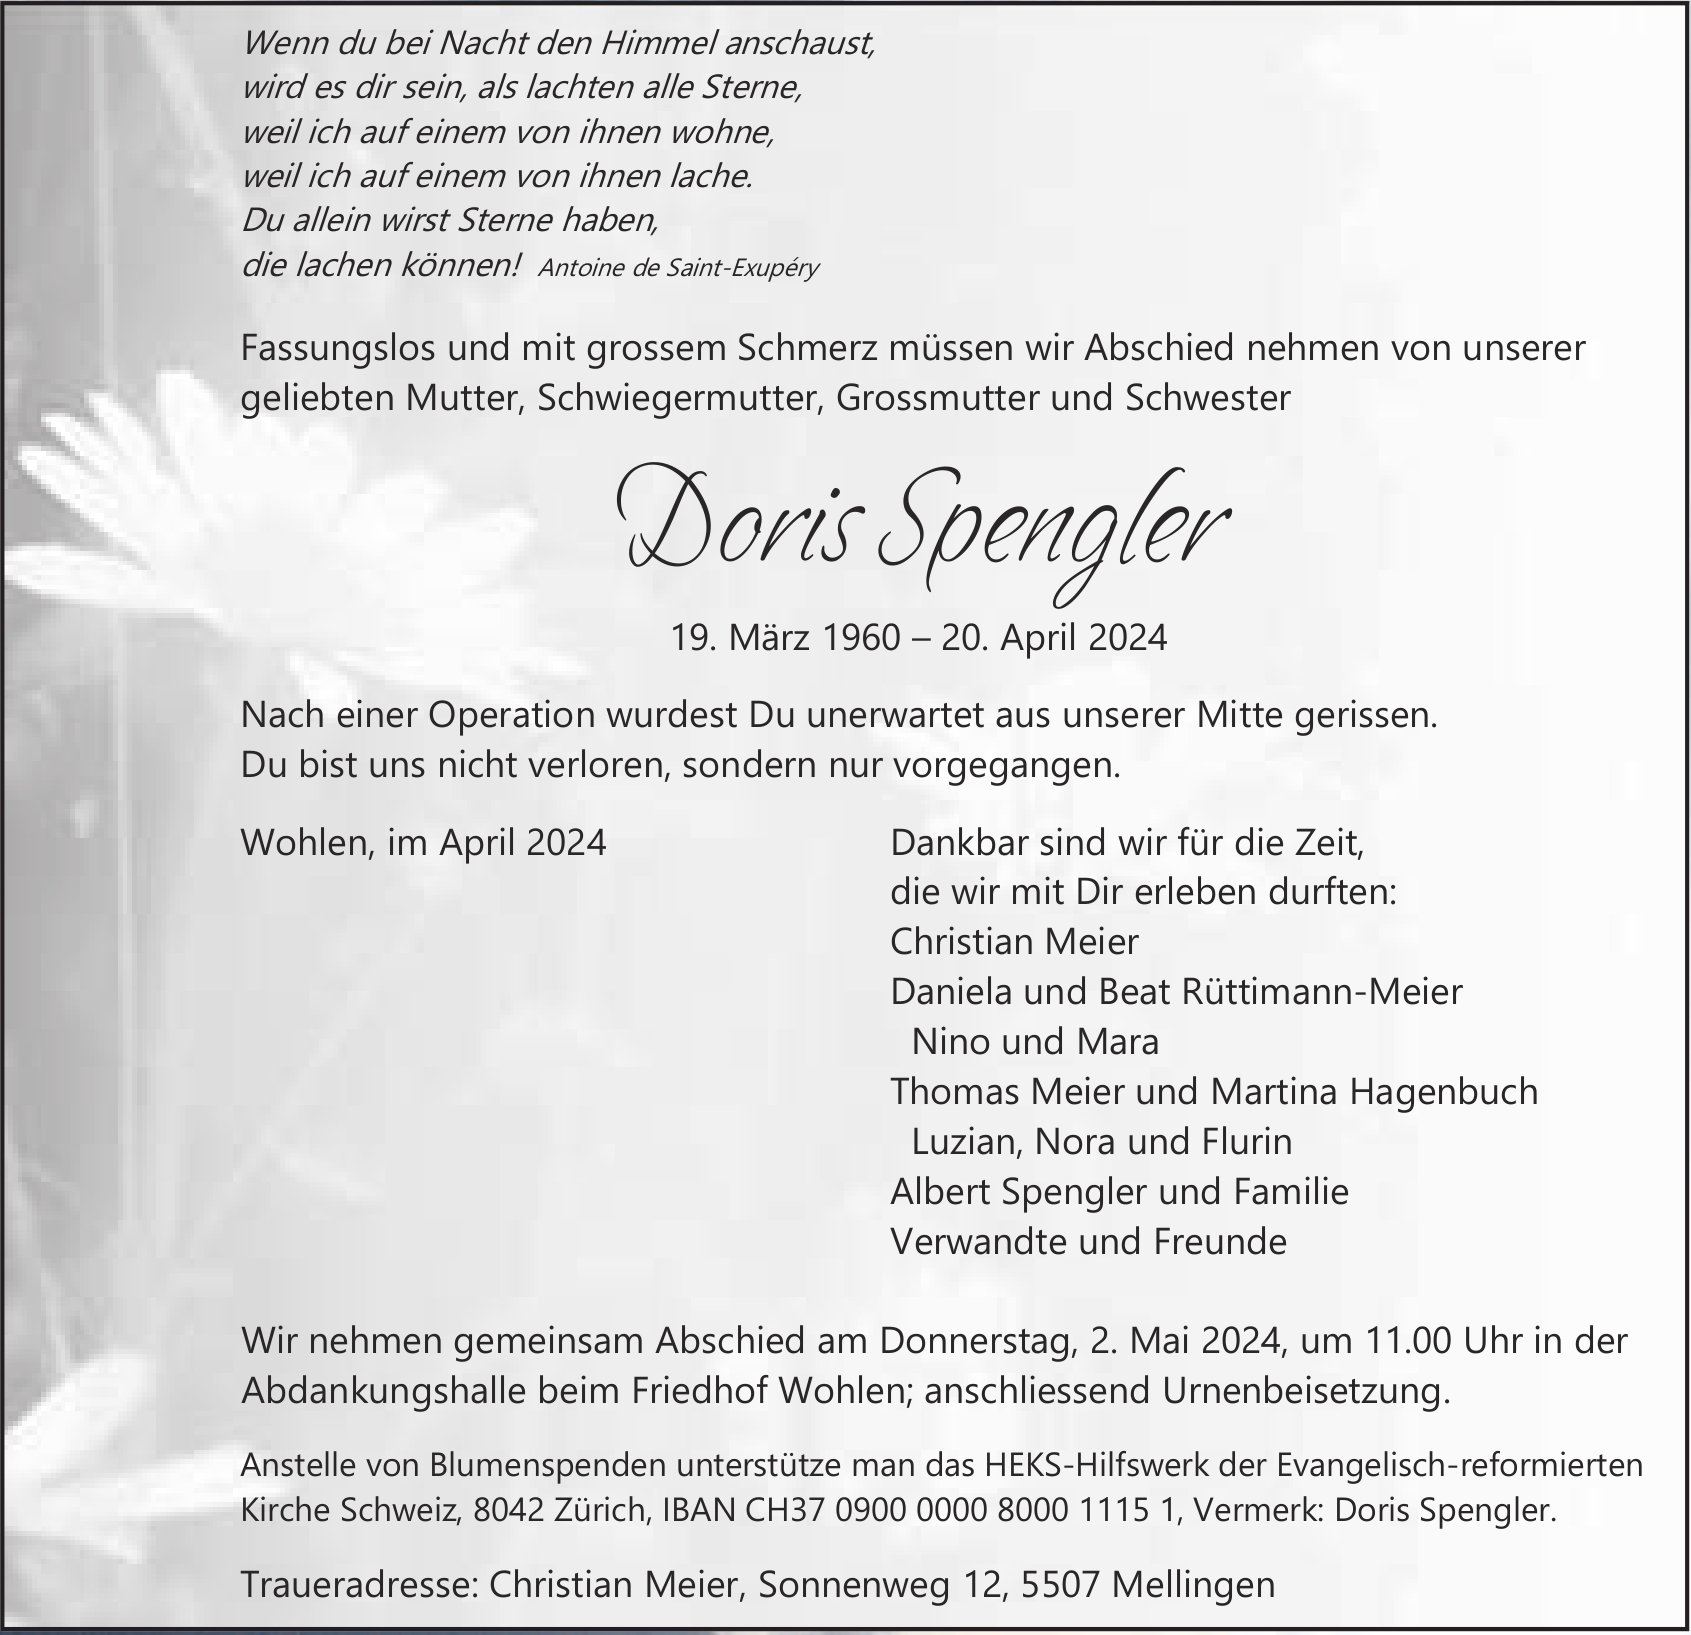 Doris Spengler, April 2024 / TA